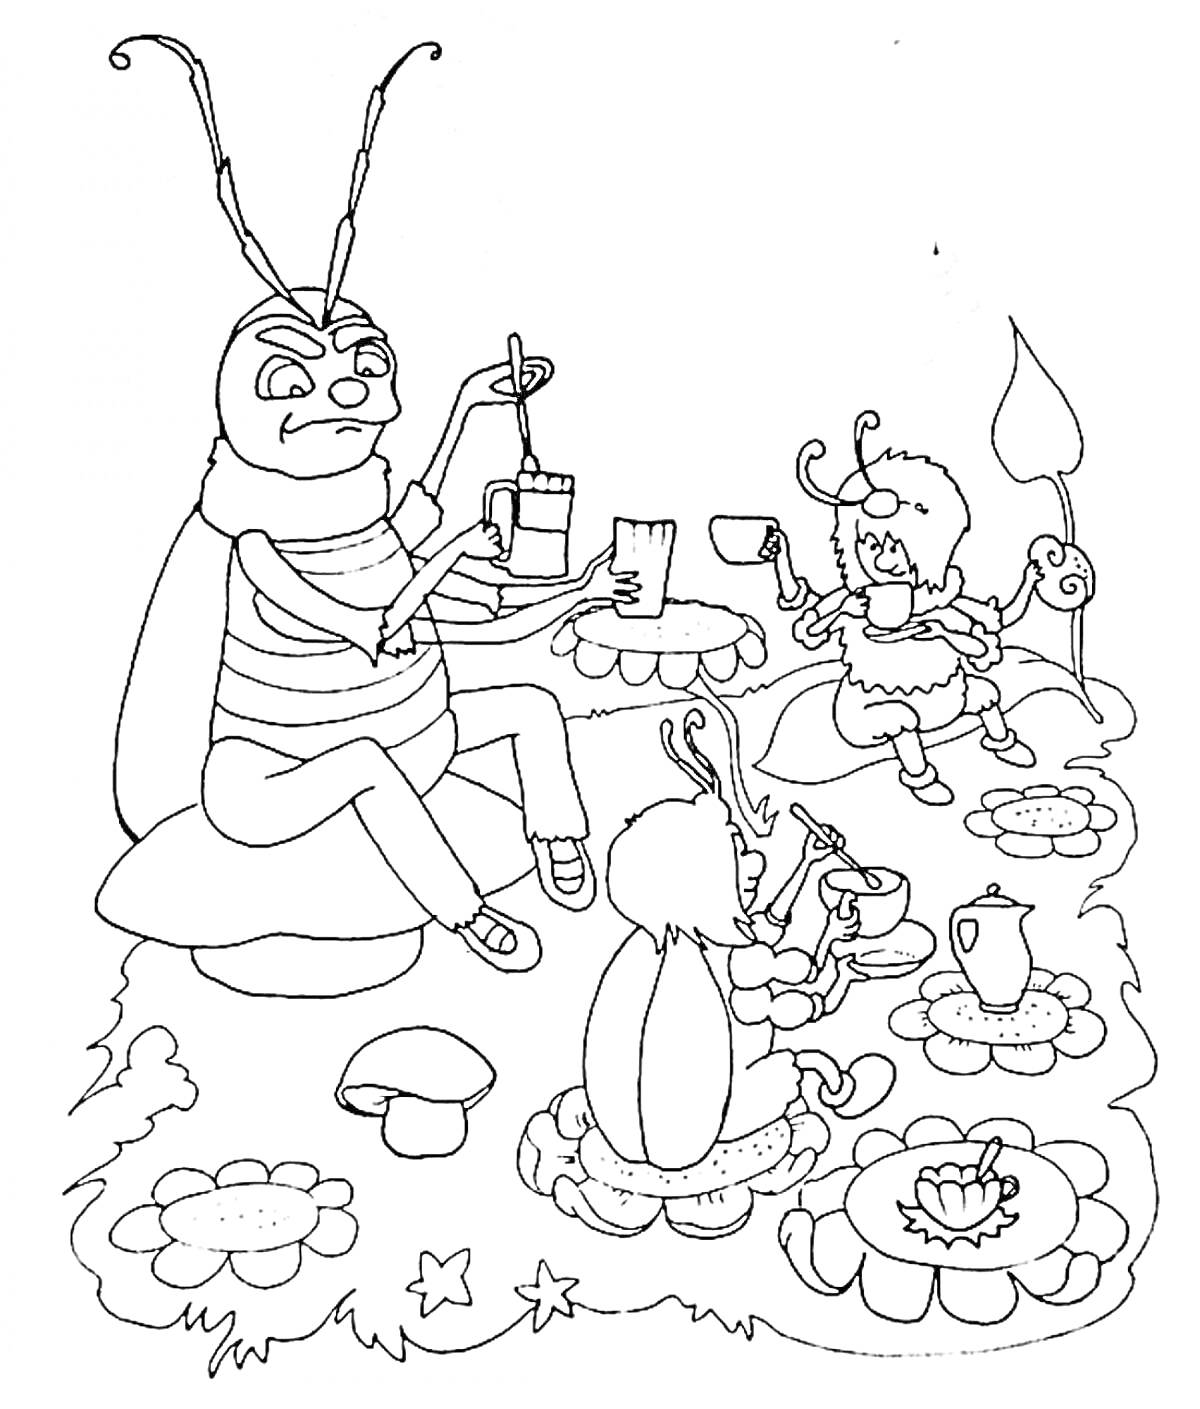 Раскраска Муха-Цокотуха с друзьями на пикнике - муха, муравей и другой жук сидят за столами с цветочными скатертями, угощаются чаем и пирогом, вокруг растут грибы и цветы.